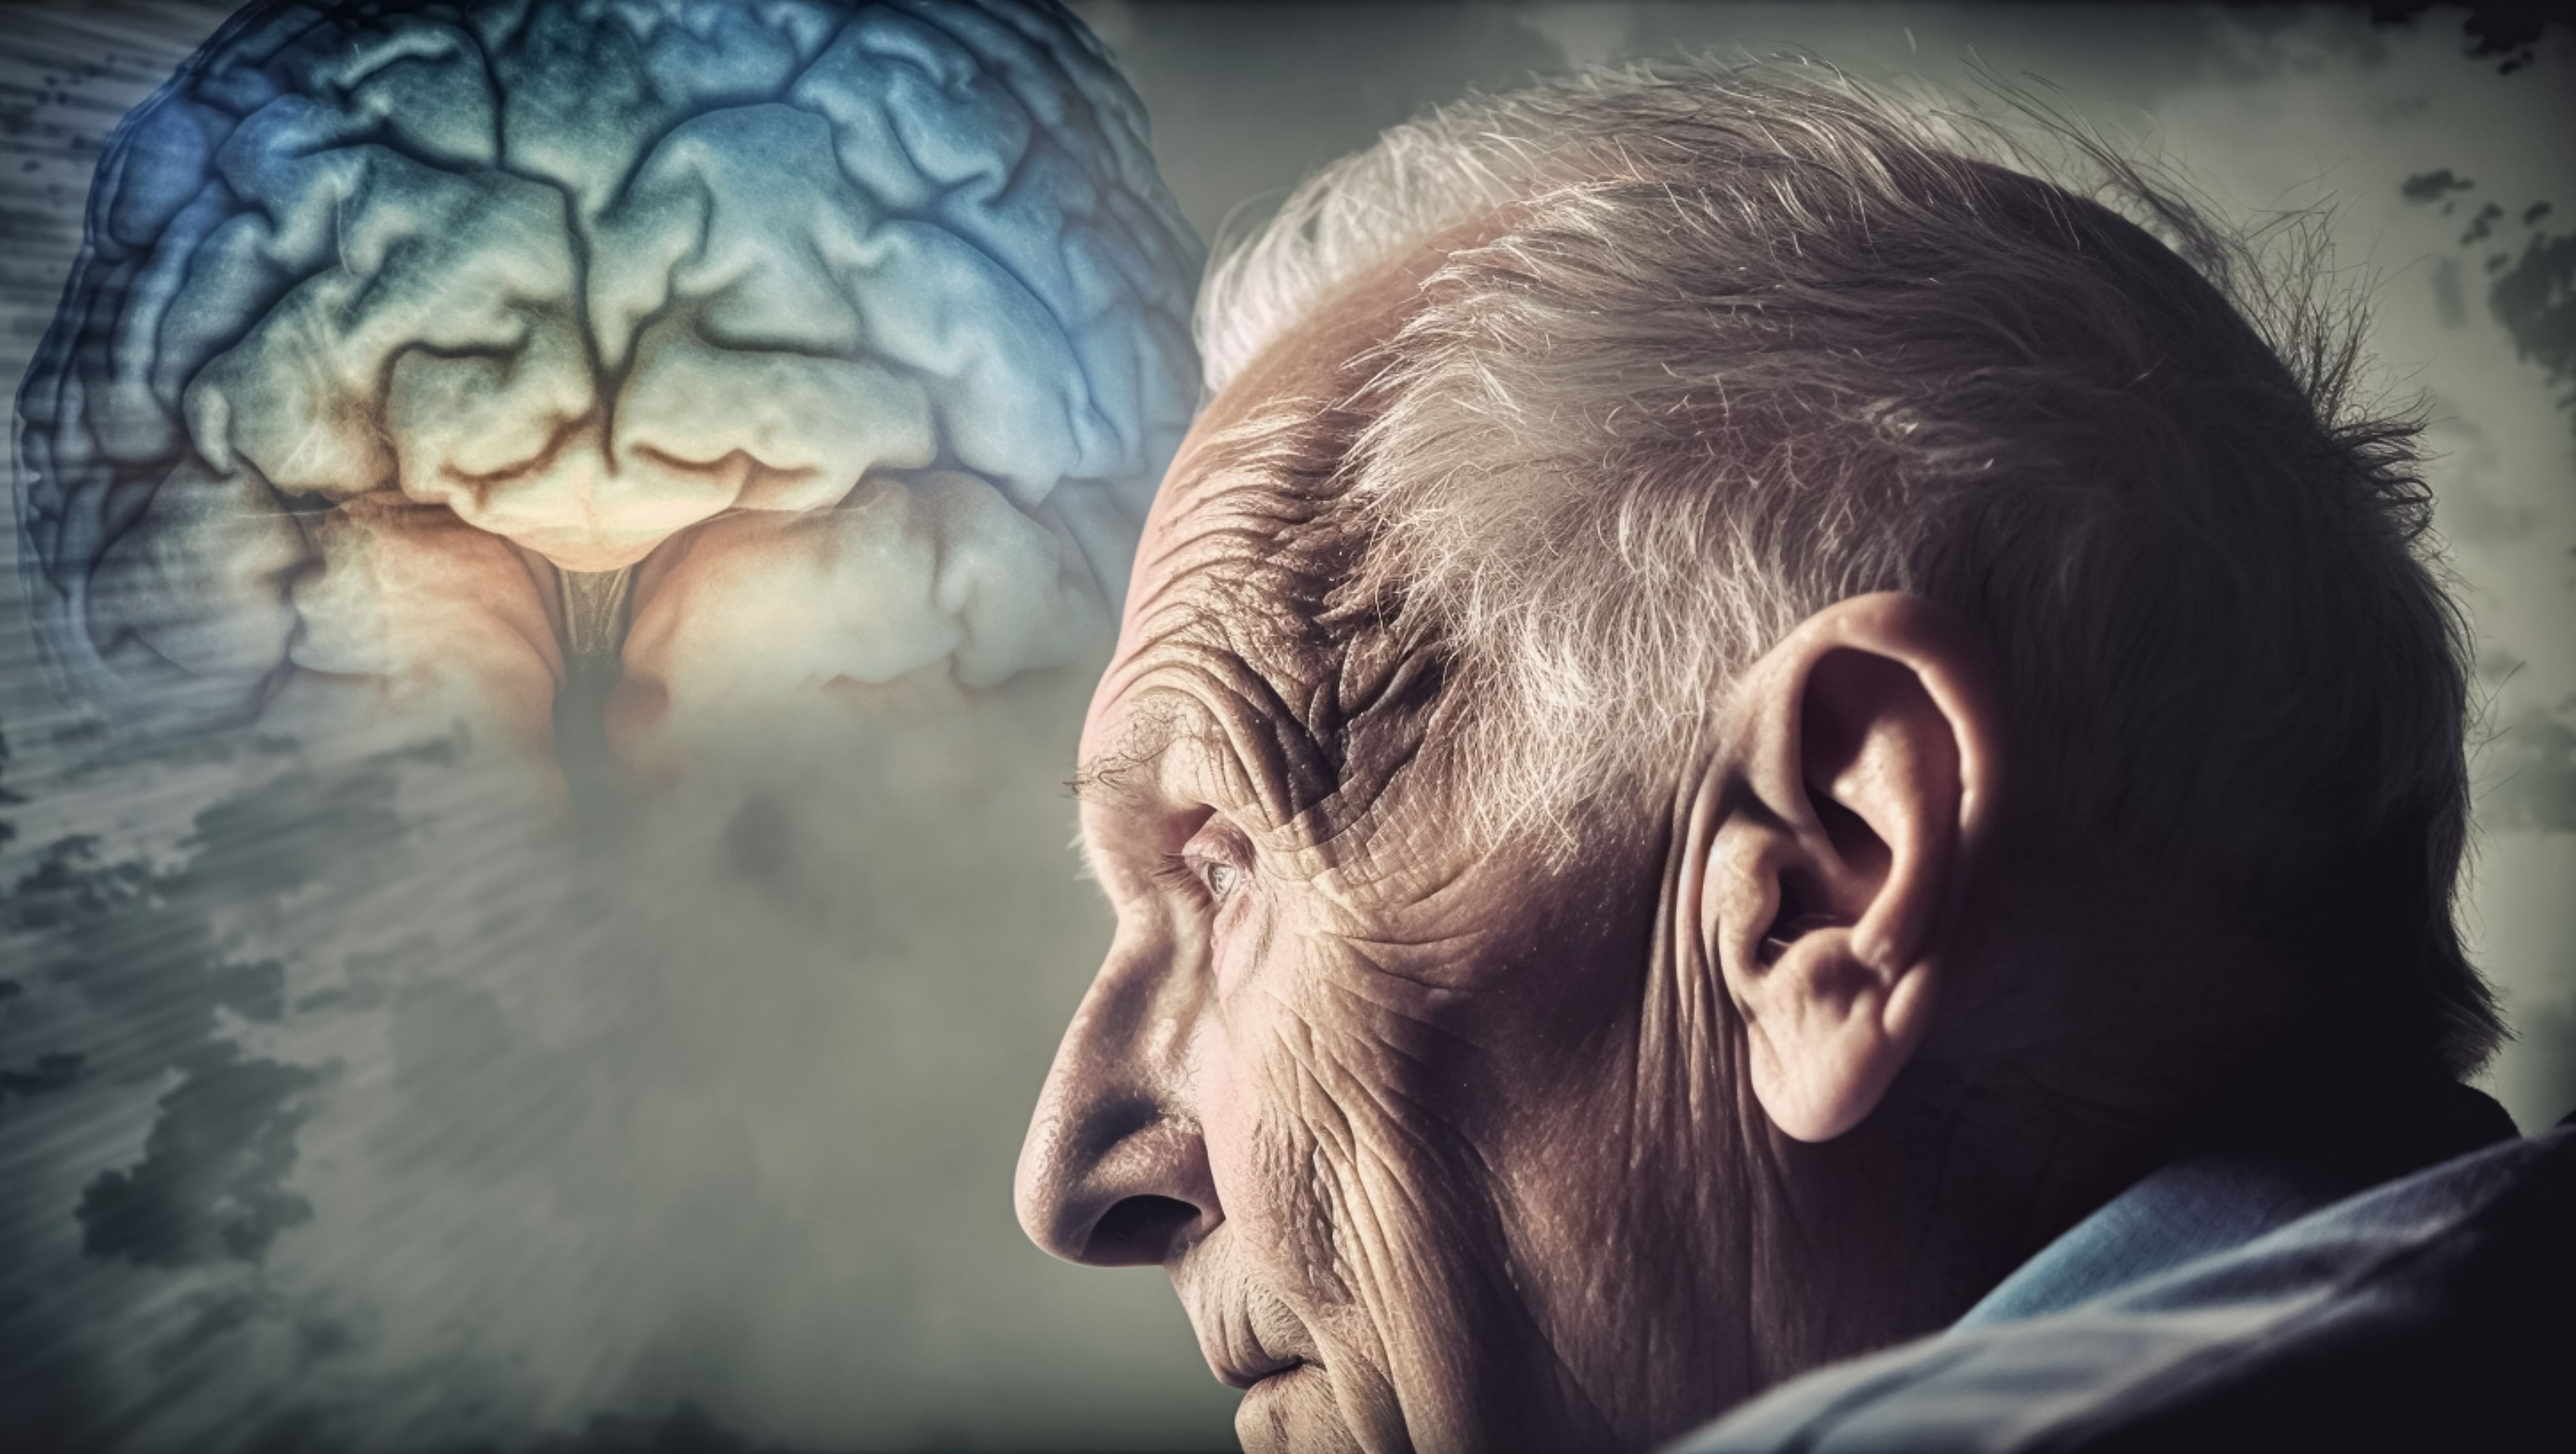 Los trastornos neurocognitivos, como la enfermedad de Alzheimer, afectan la capacidad para pensar y razonar